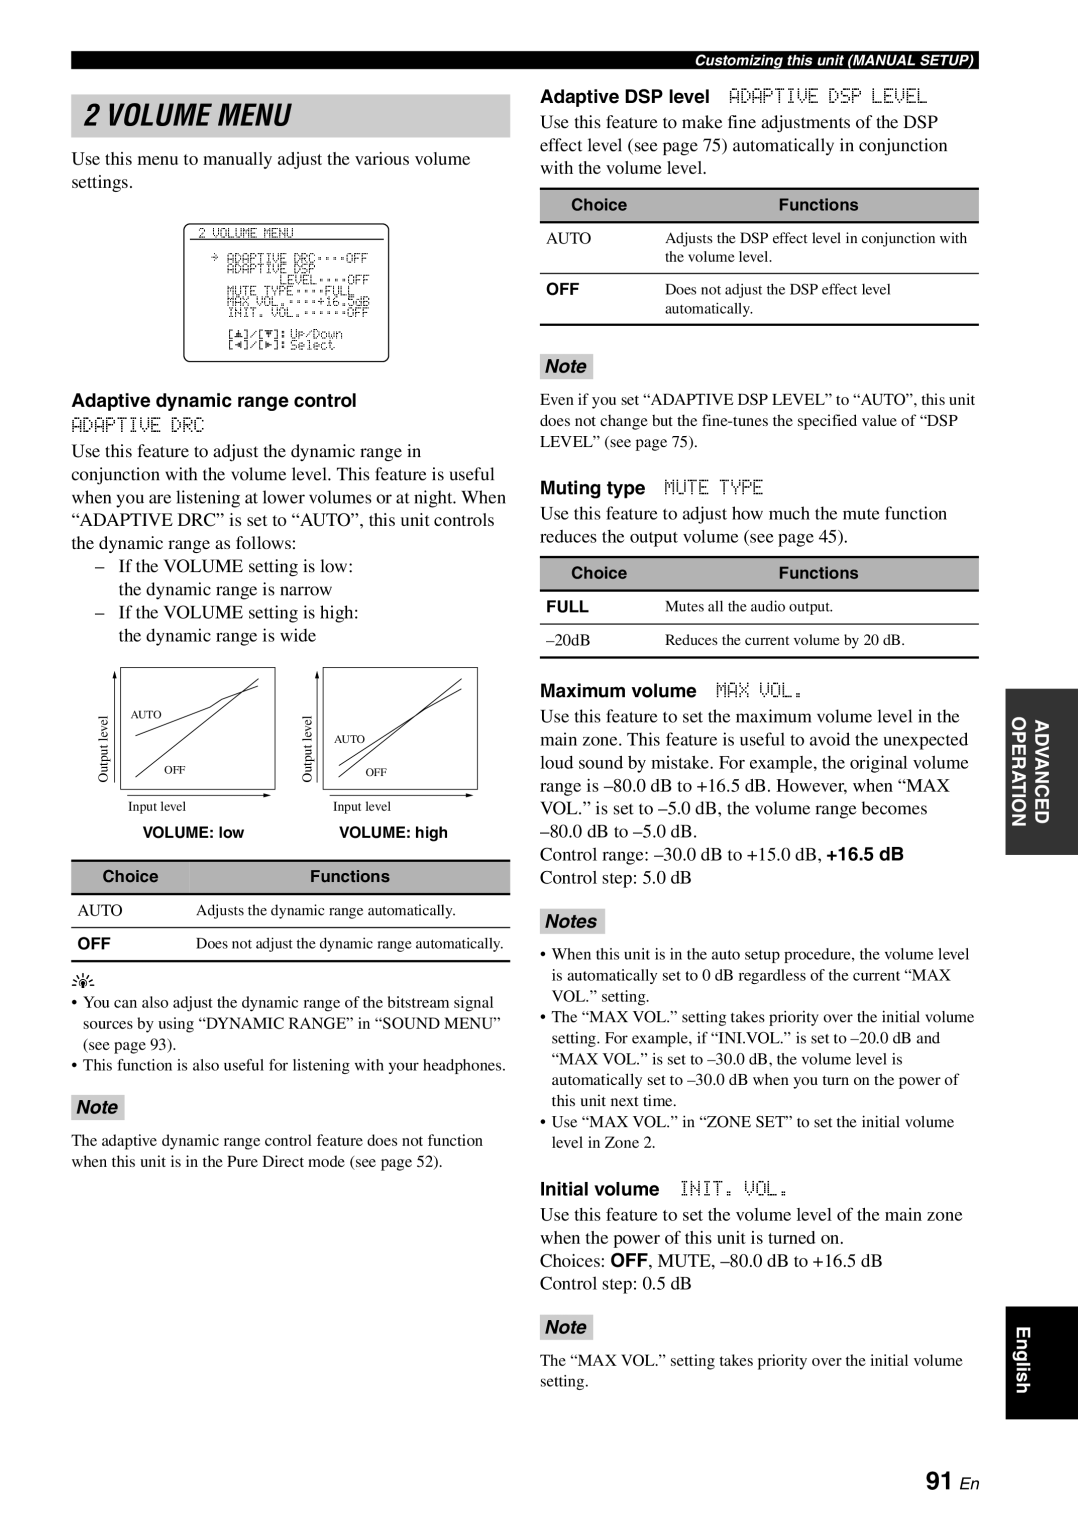 Yamaha HTR-6180 owner manual Volume Menu, 91 En, Notes 